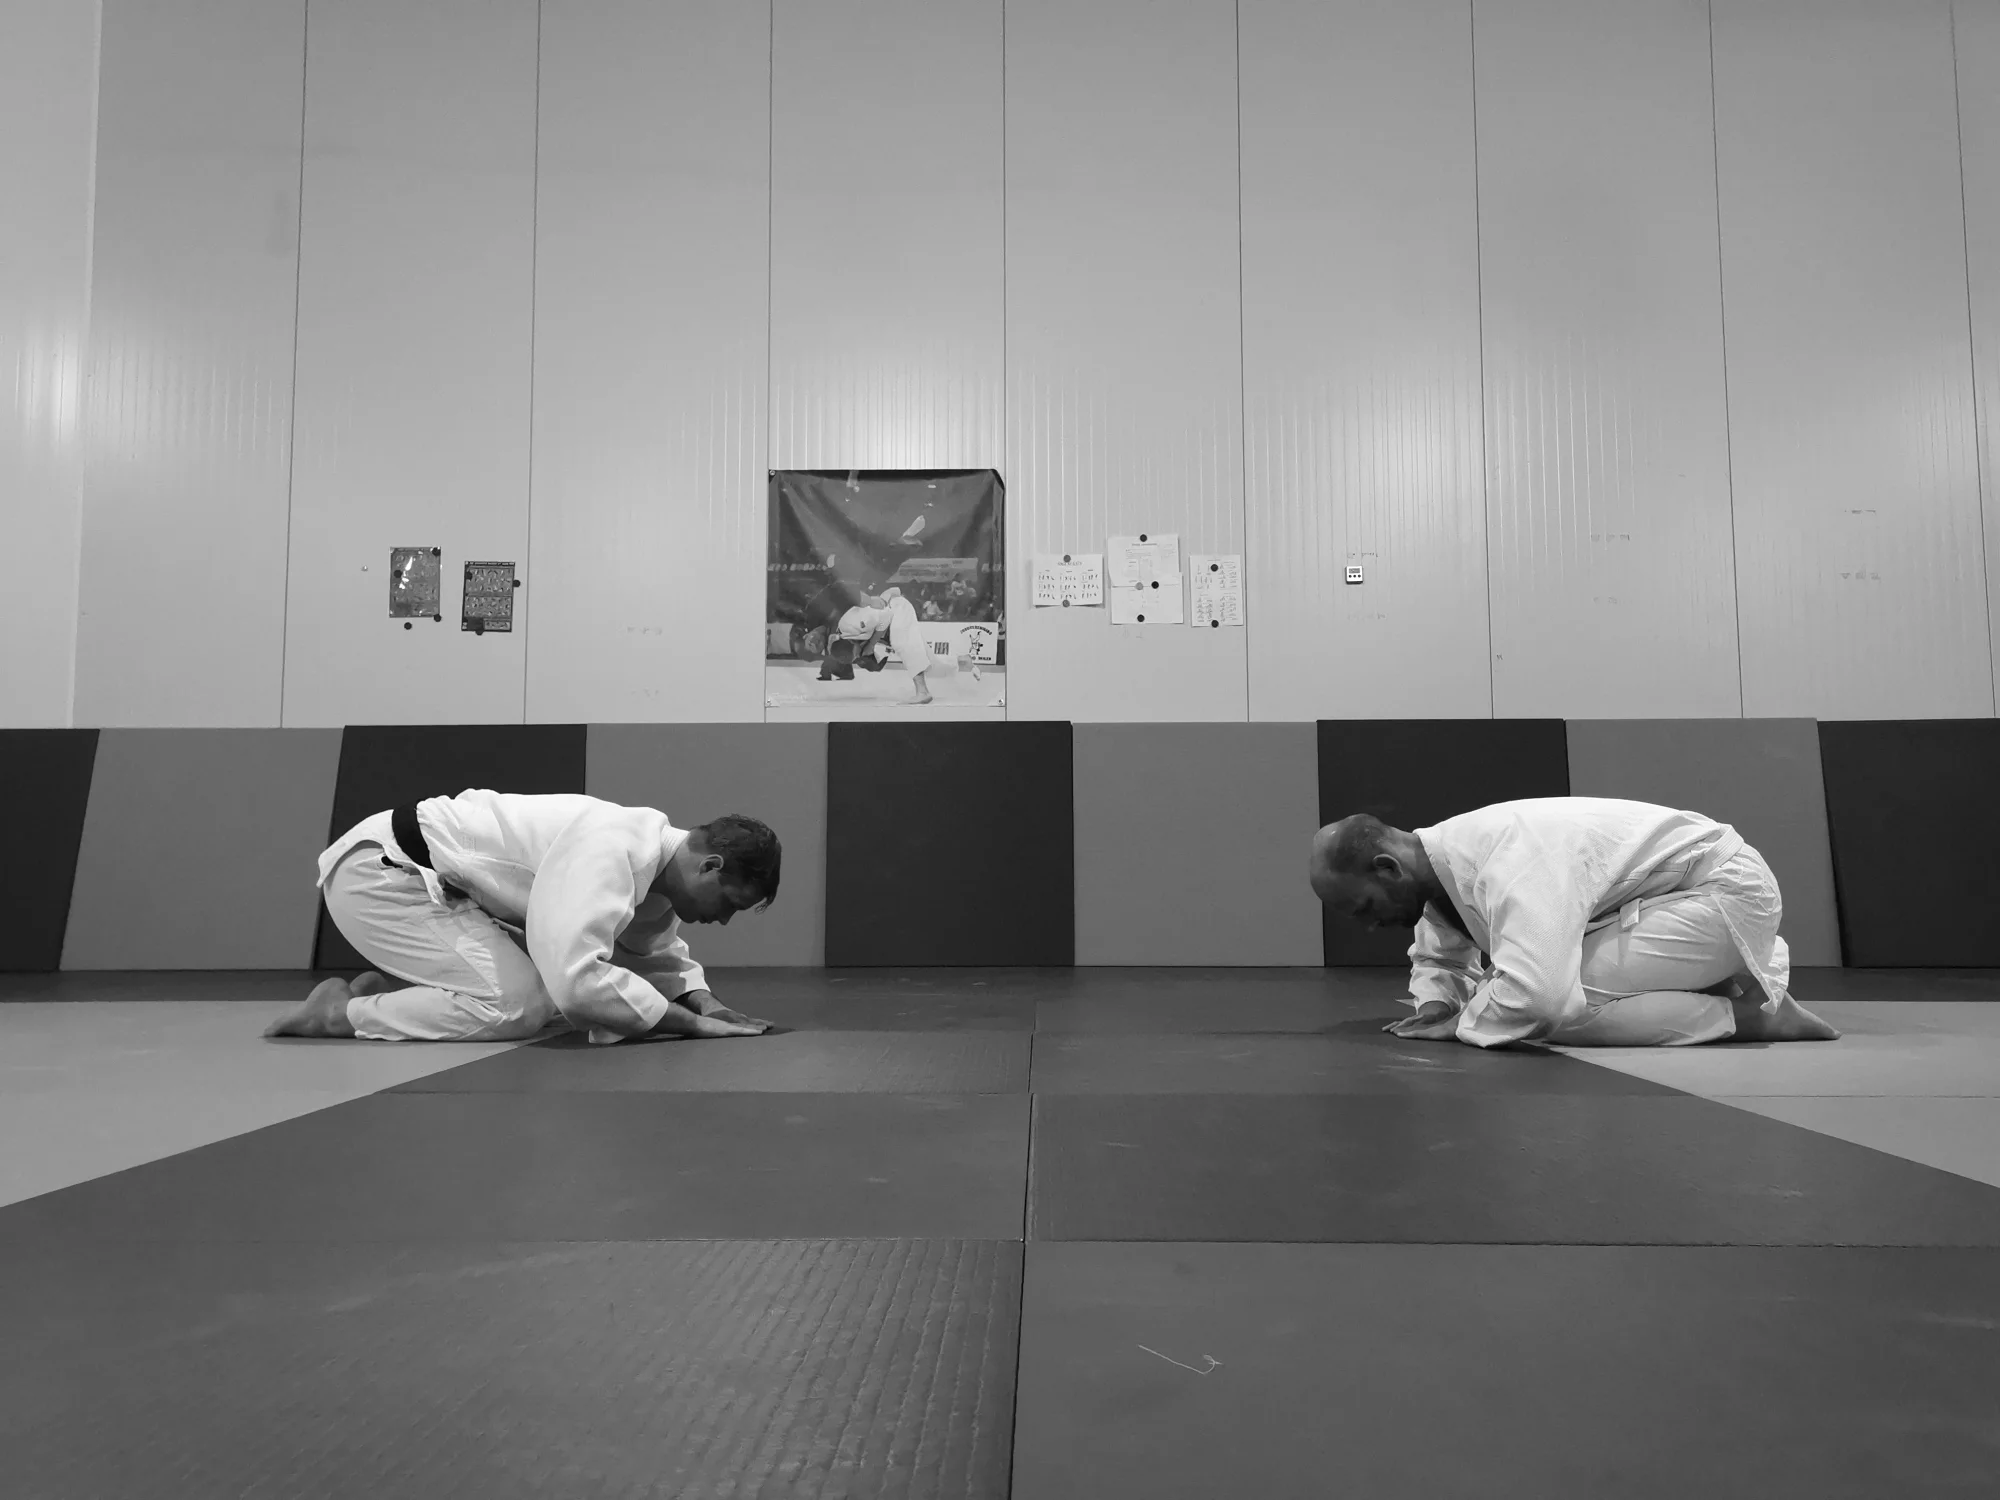 Reigi en Reishiki gedragscode en etiquette bij Judo